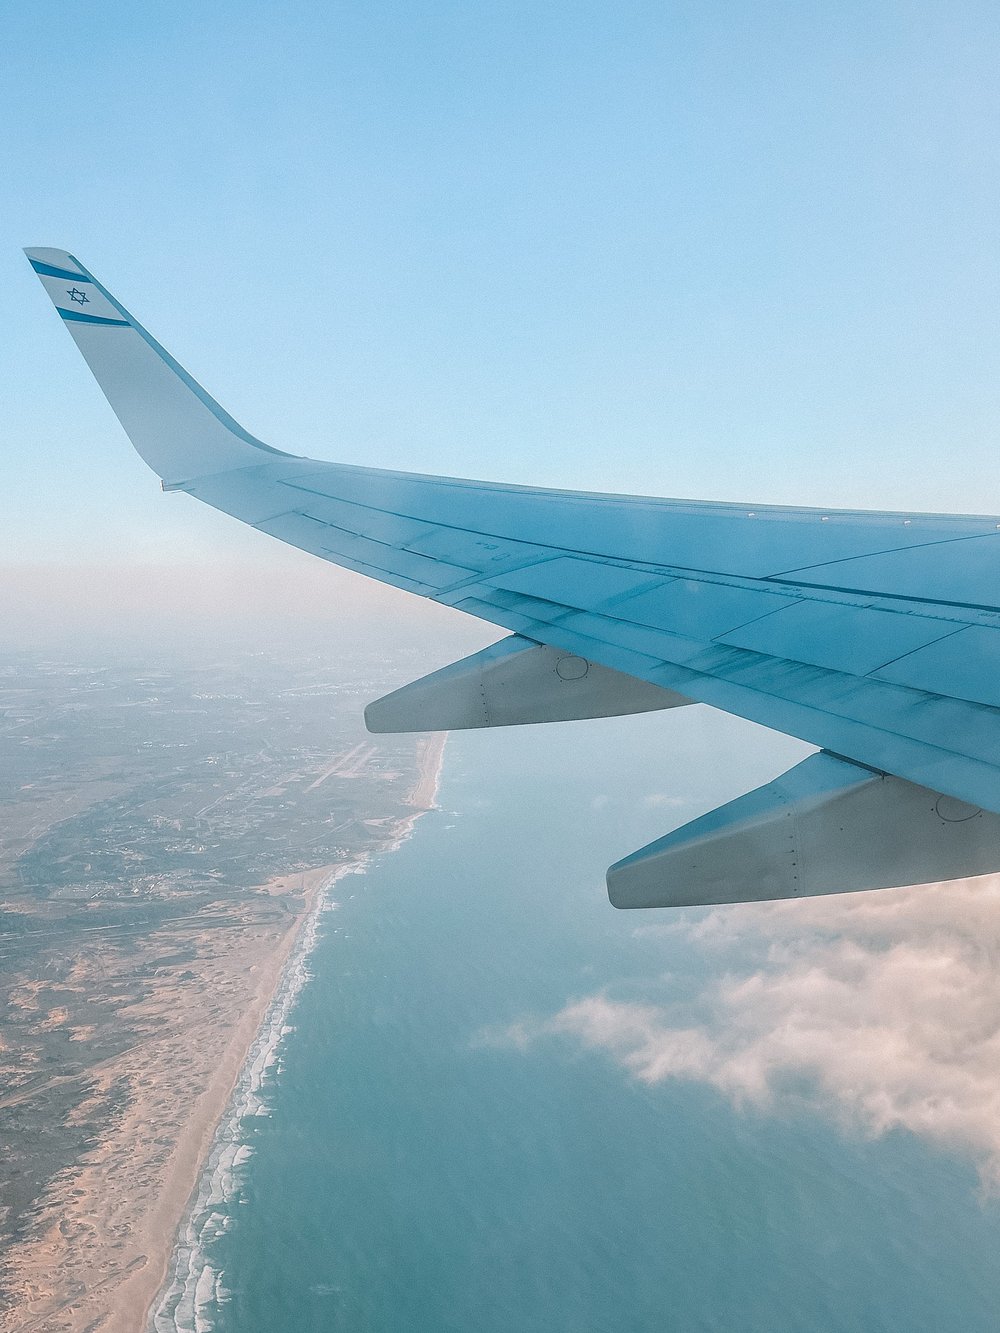 El Al airplane flying over Tel Aviv - Israel